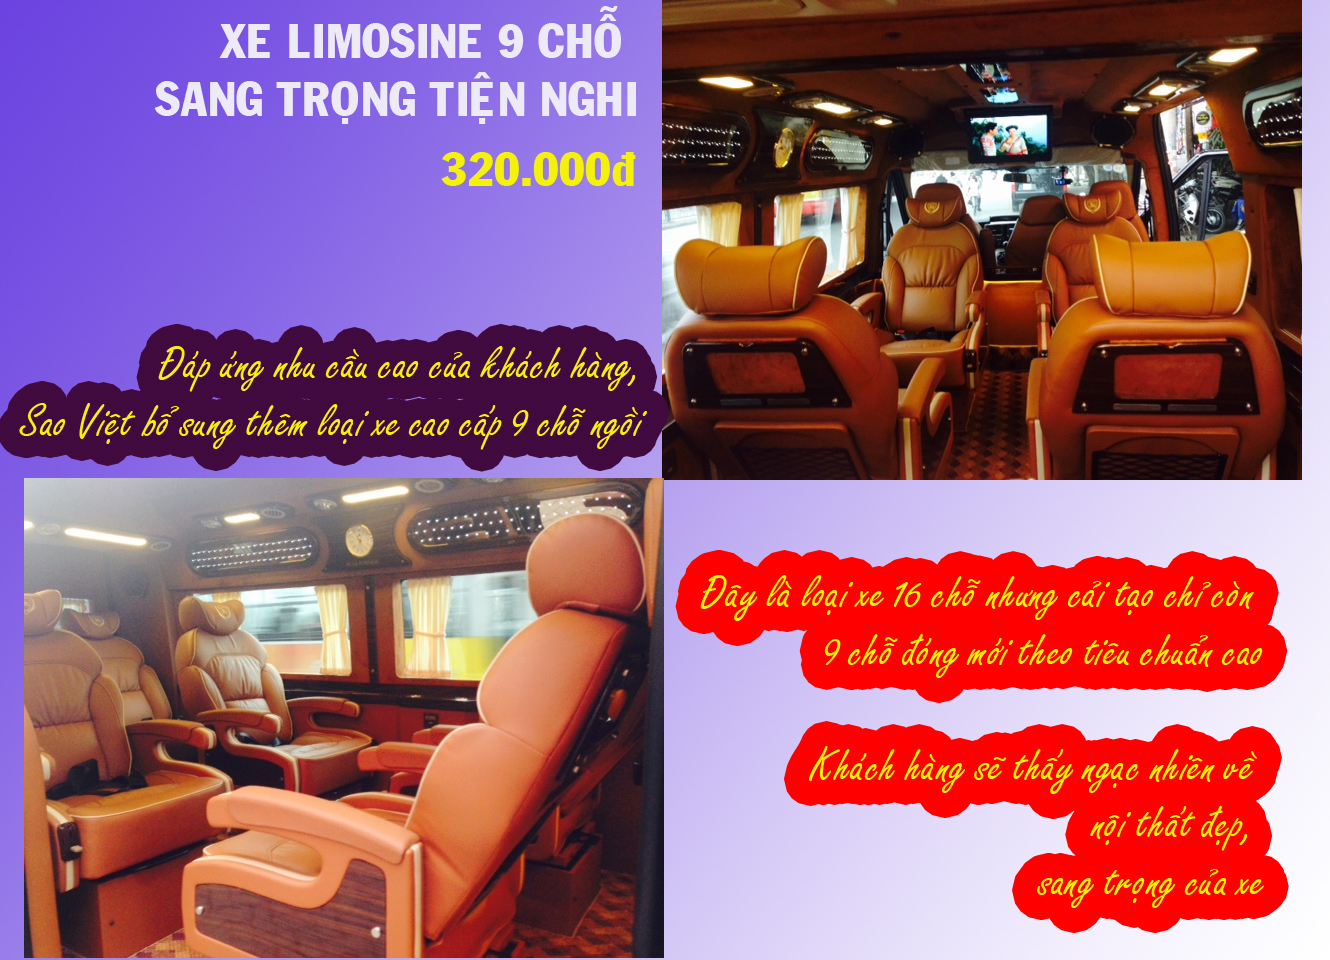 Hng Sao Việt bổ sung xe cao cấp Limosine 9 chỗ ngồi rất thoải mi